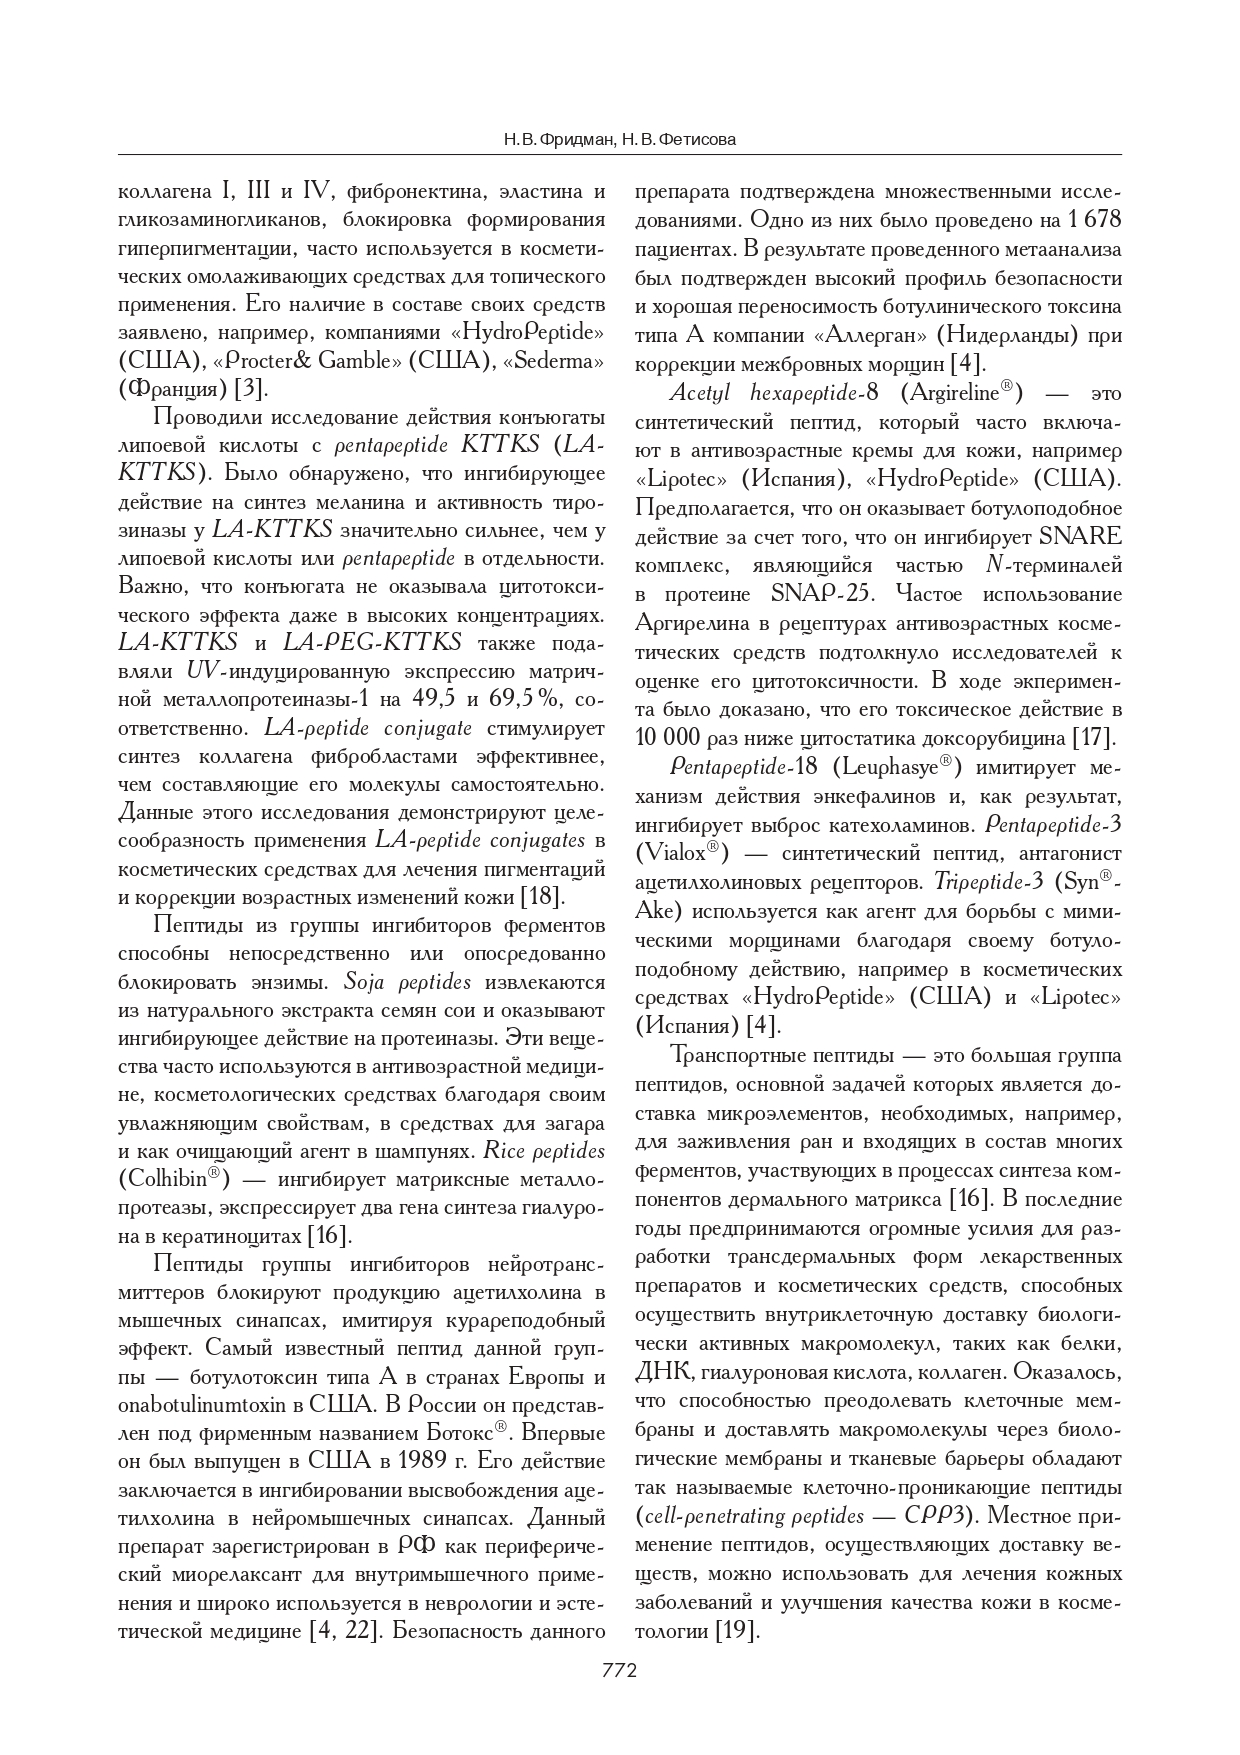 Обзор пептидов, применяемых в дерматокосметологии &#8220;Успехи геронтологии&#8221; 2015 г